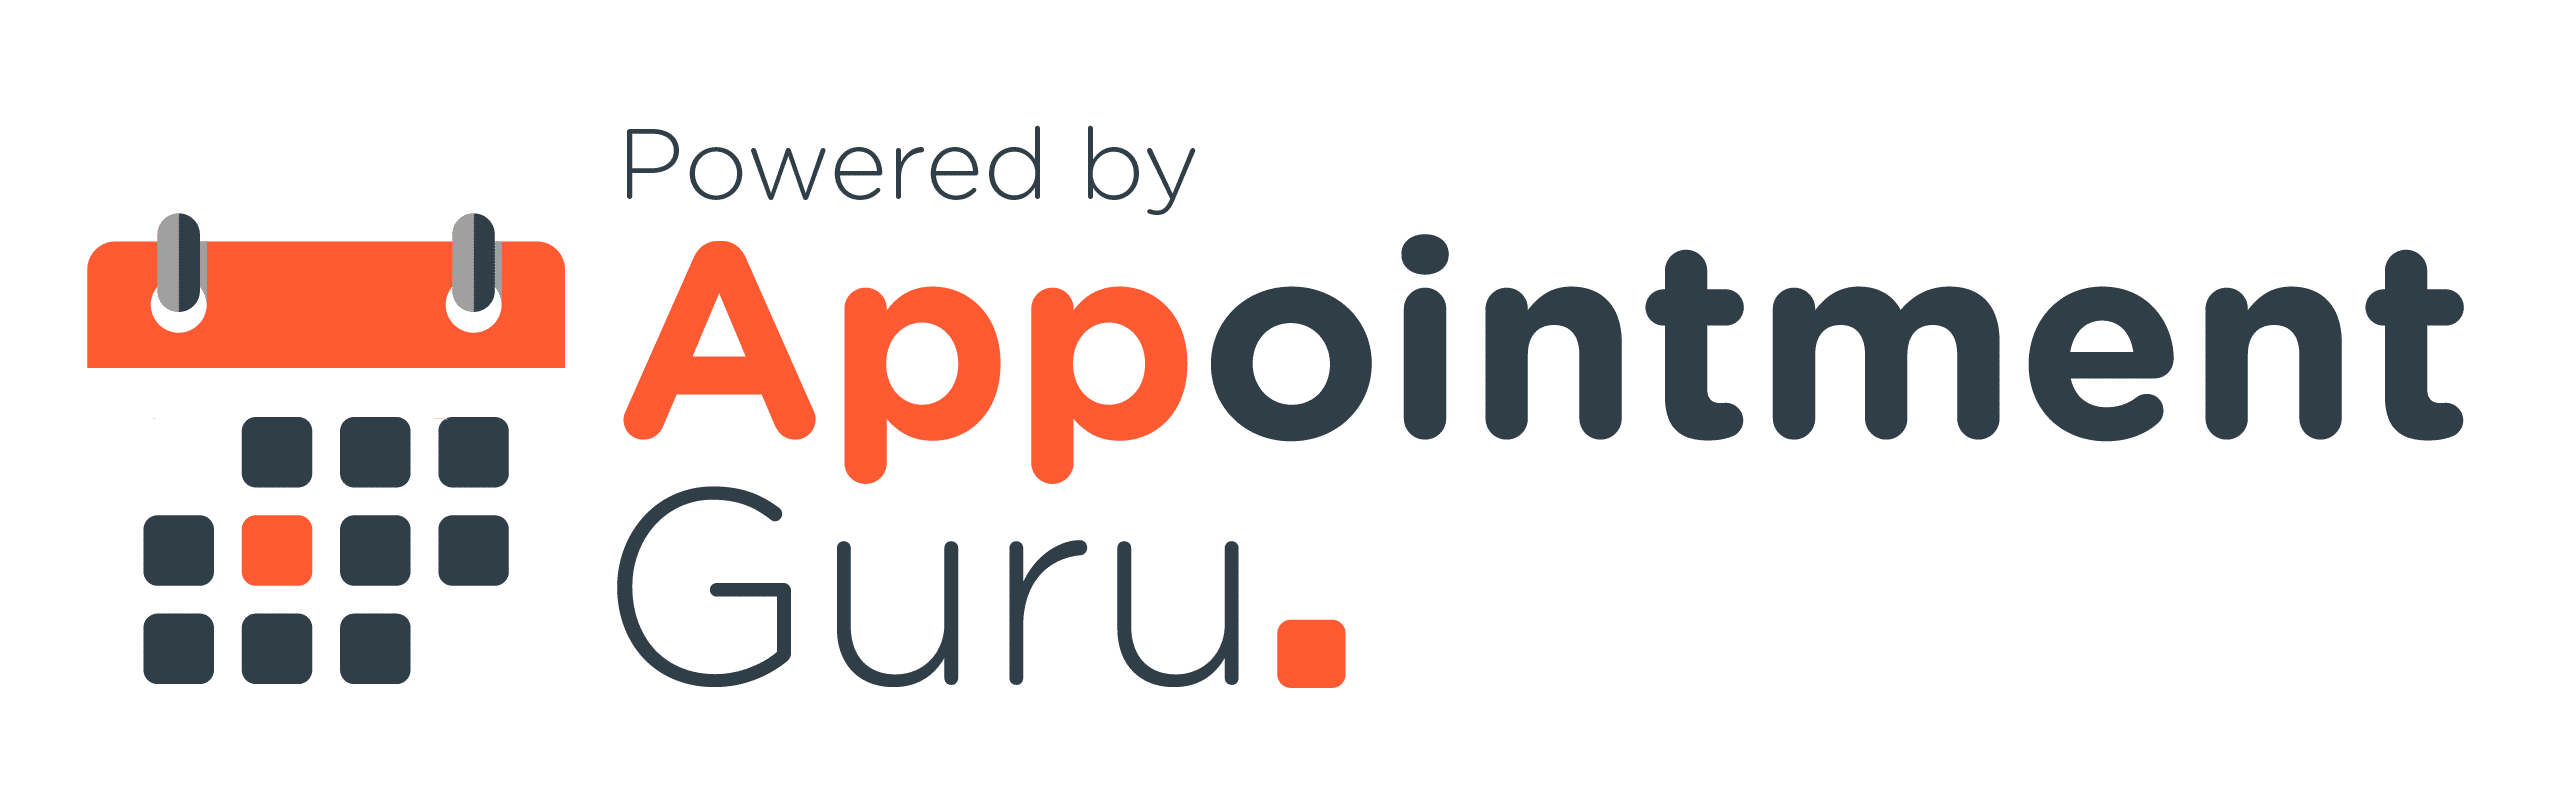 AppointmentGuru logo - powered by AppointmentGuru